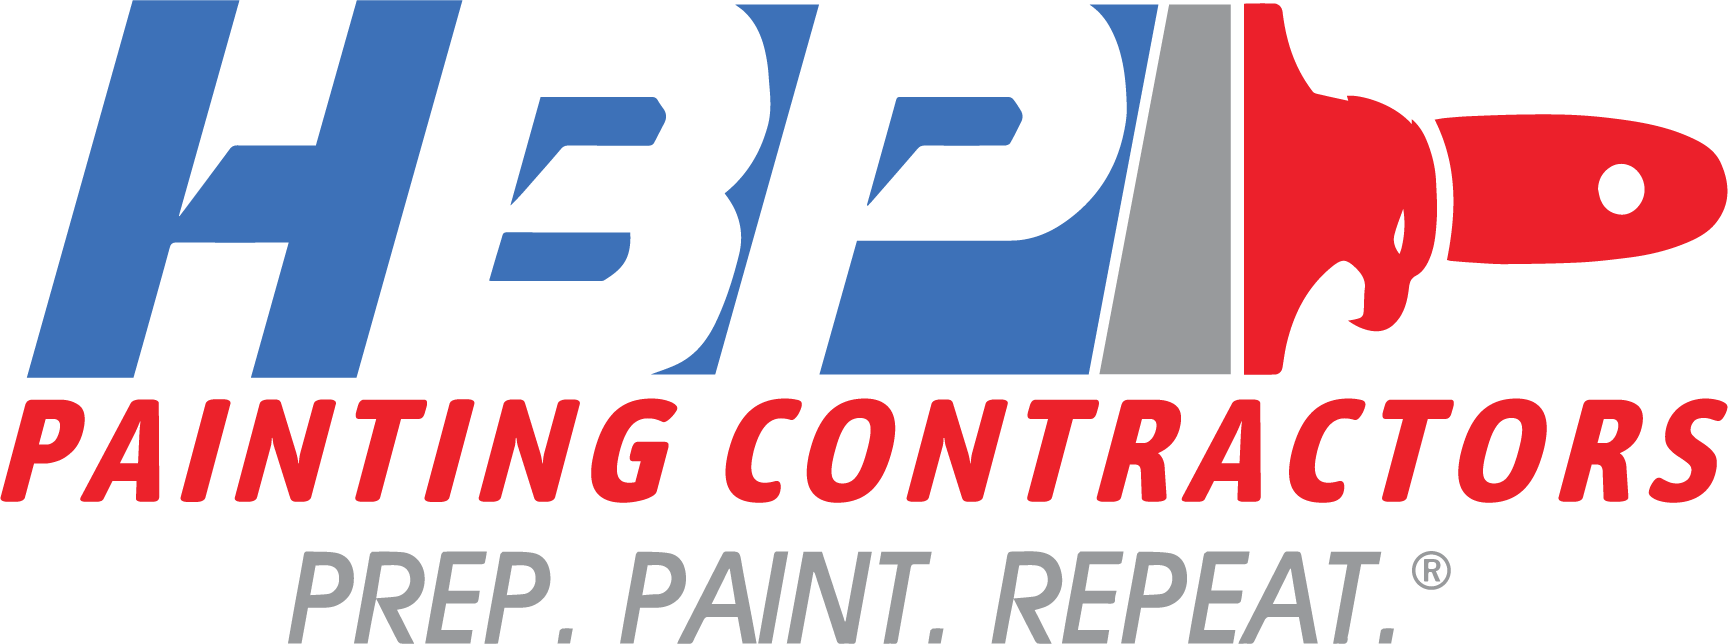 HBP Painting Contractors